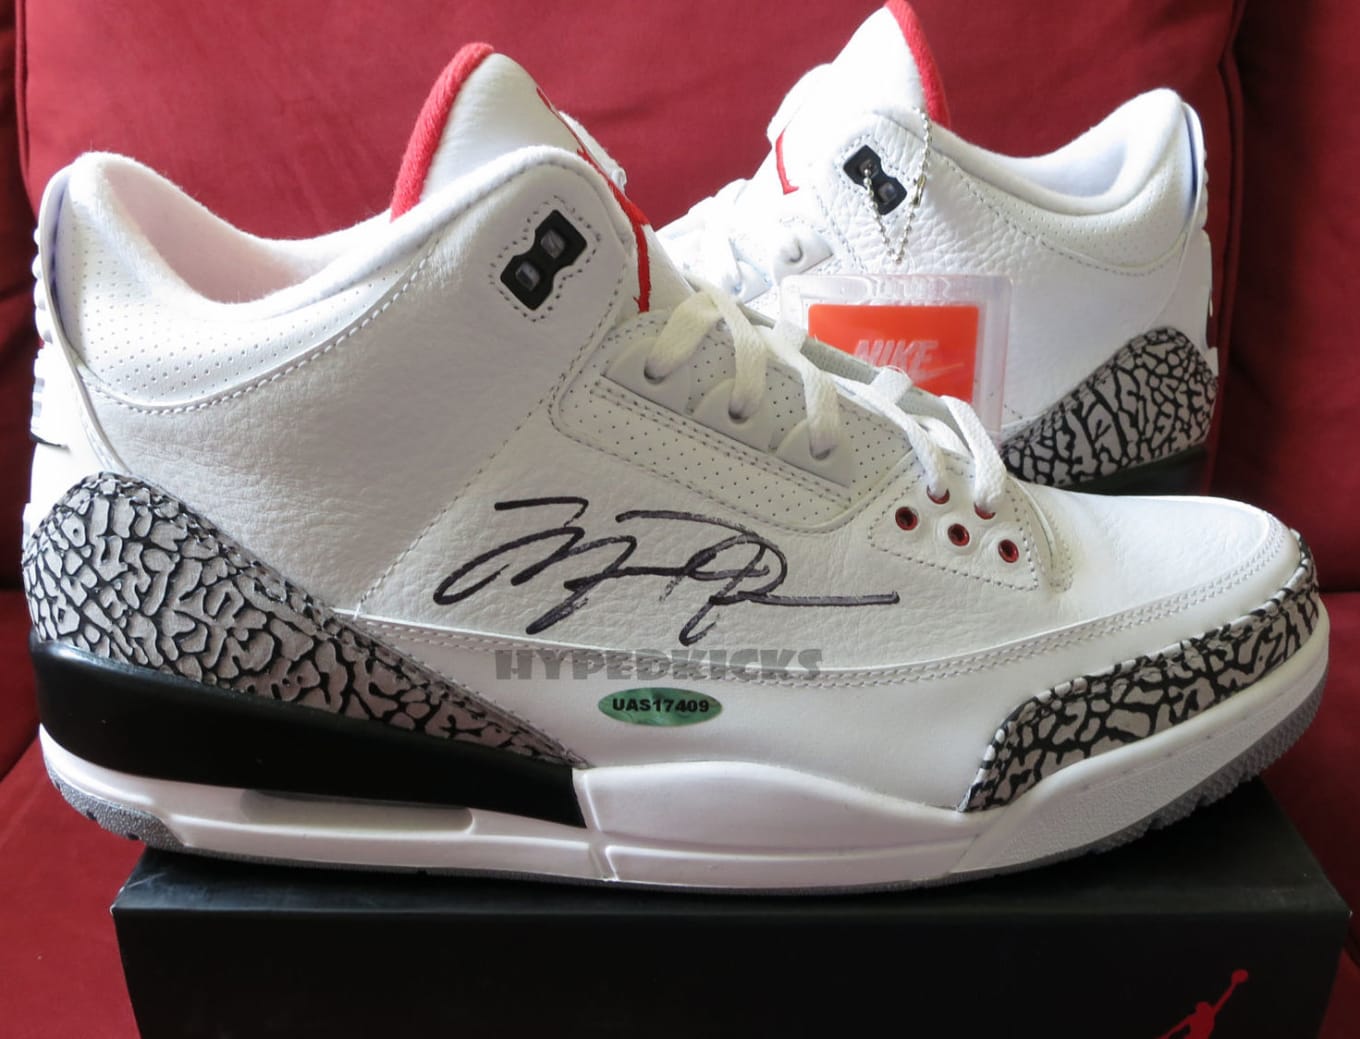 autographed michael jordan shoes